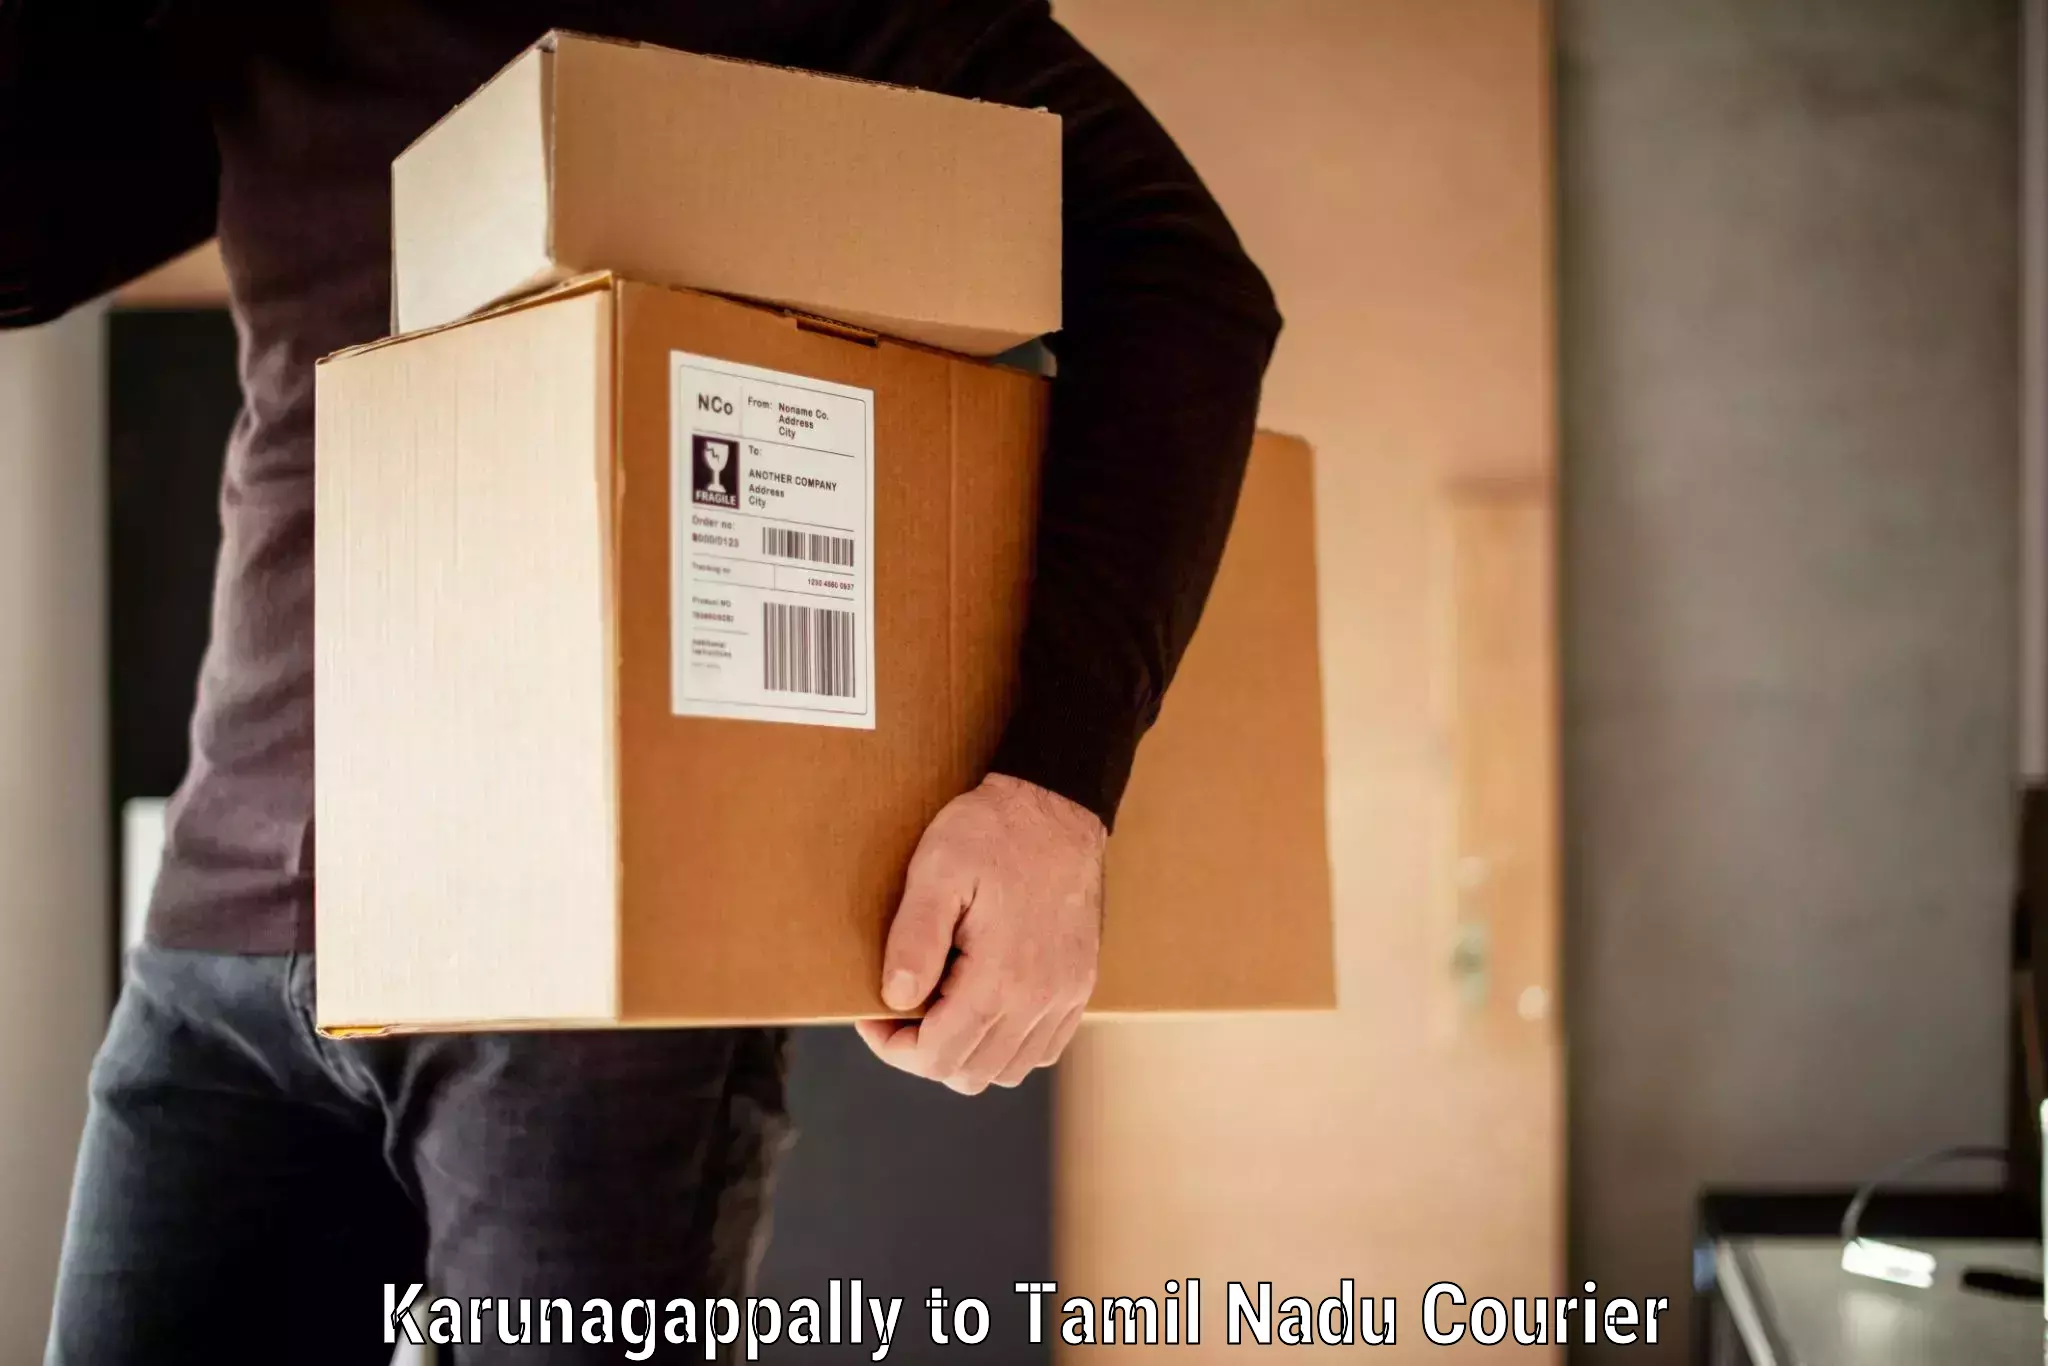 Luggage transport company Karunagappally to Gudalur